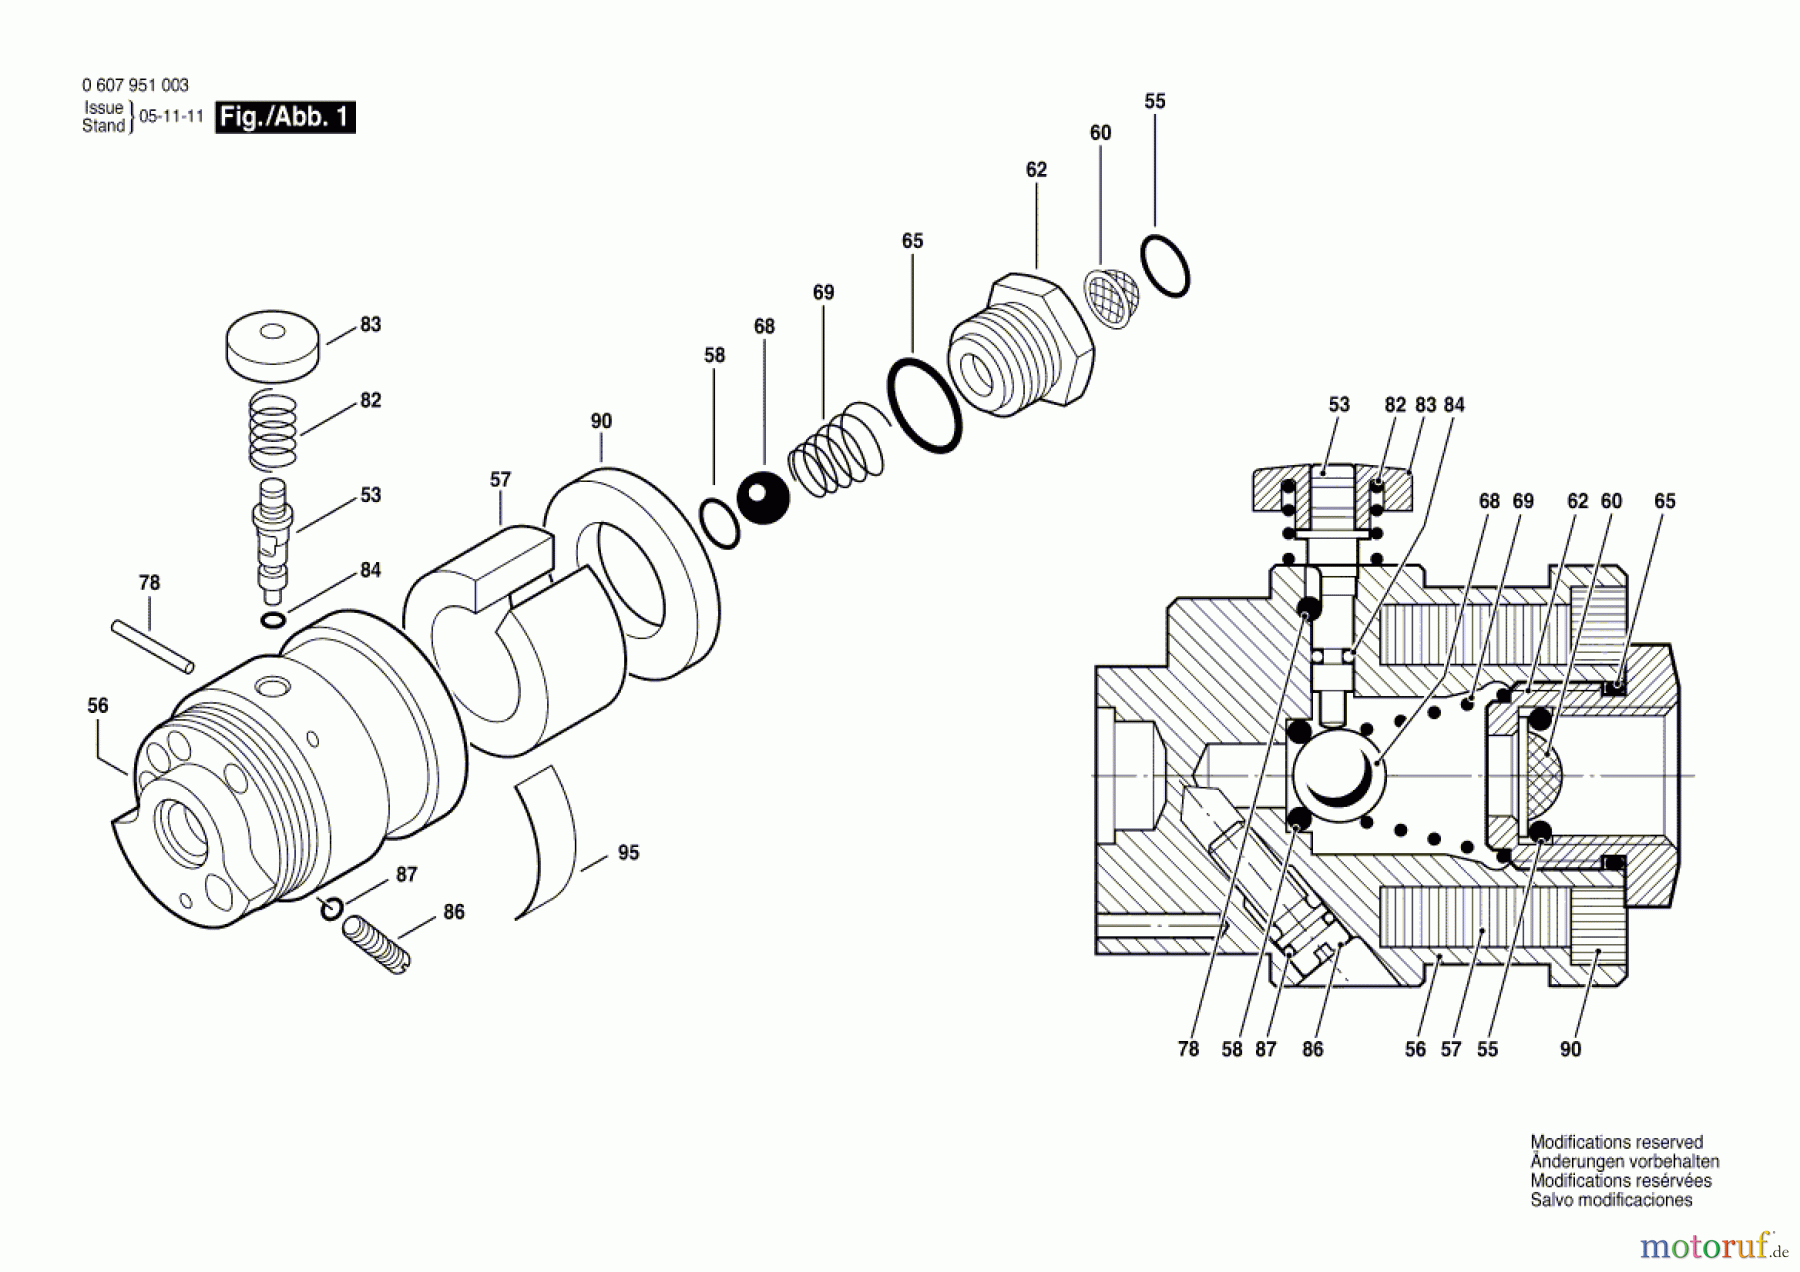  Bosch Werkzeug Ventilgehäuse ---- Seite 1